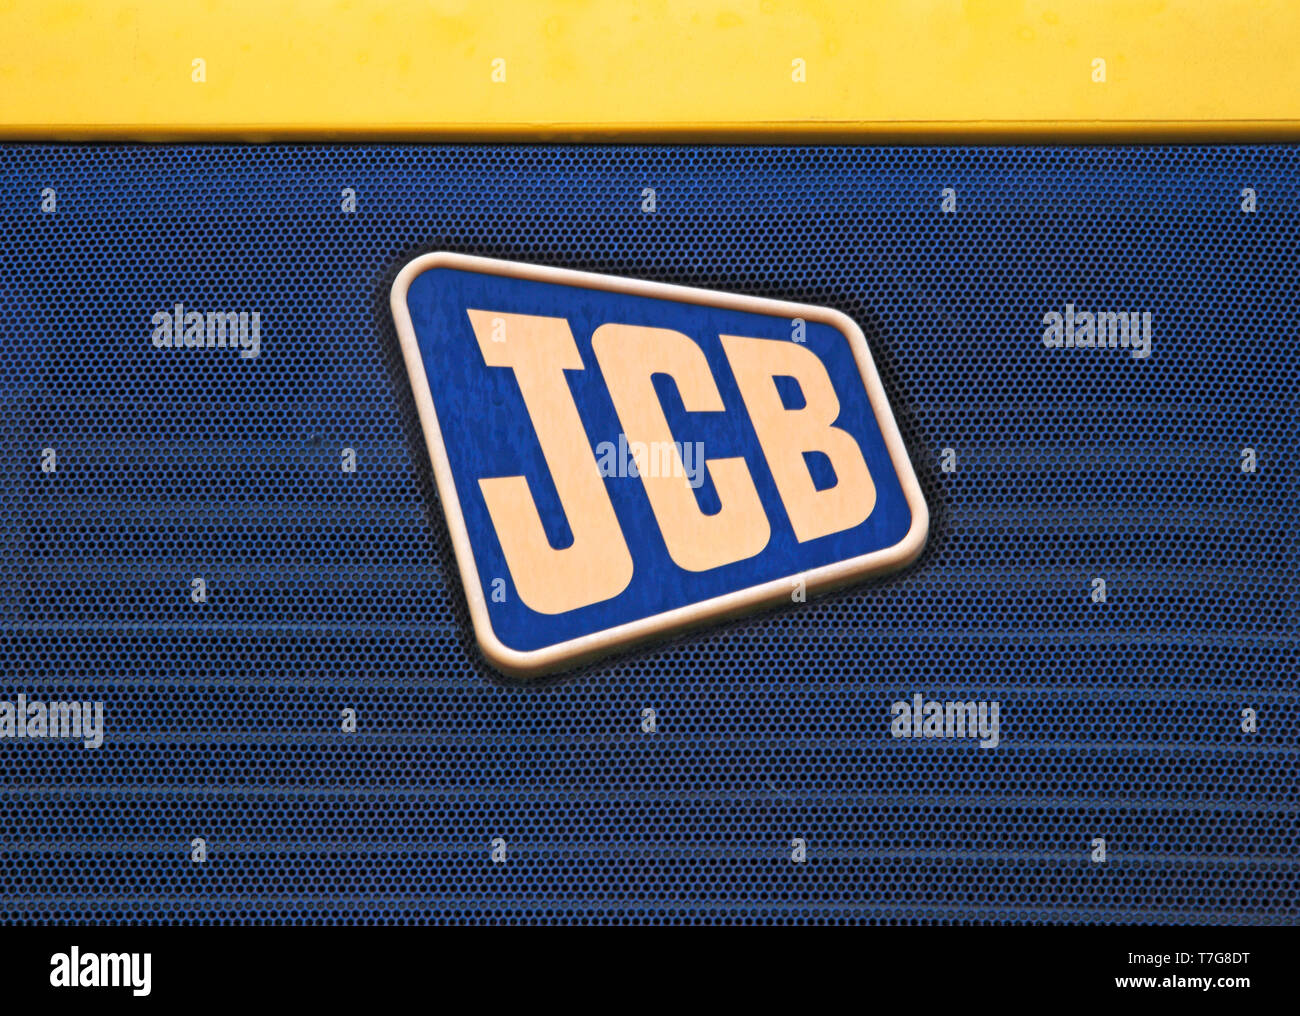 A JCB logo from an articulated dump truck. Stock Photo